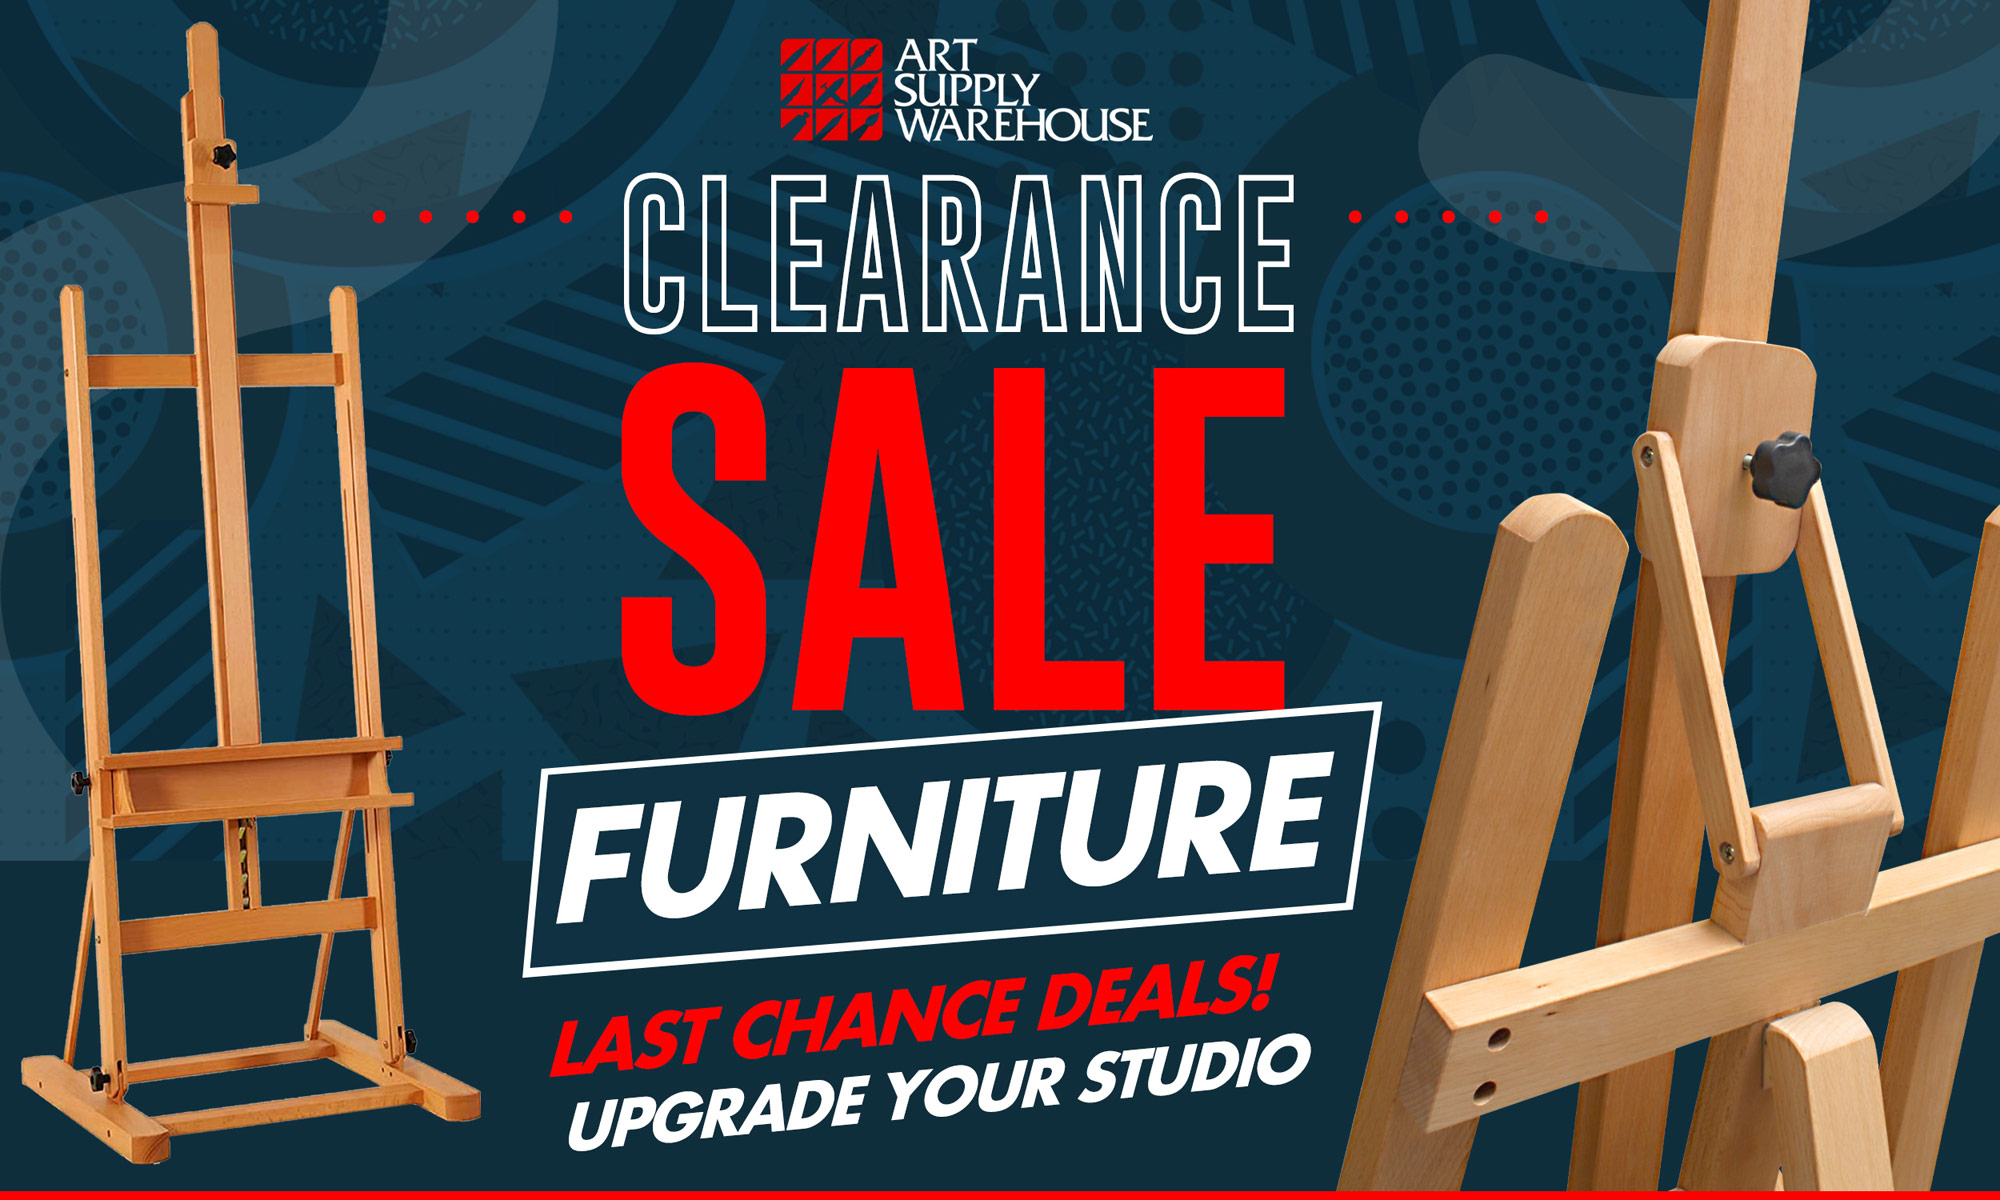 Closeout Furniture Deals